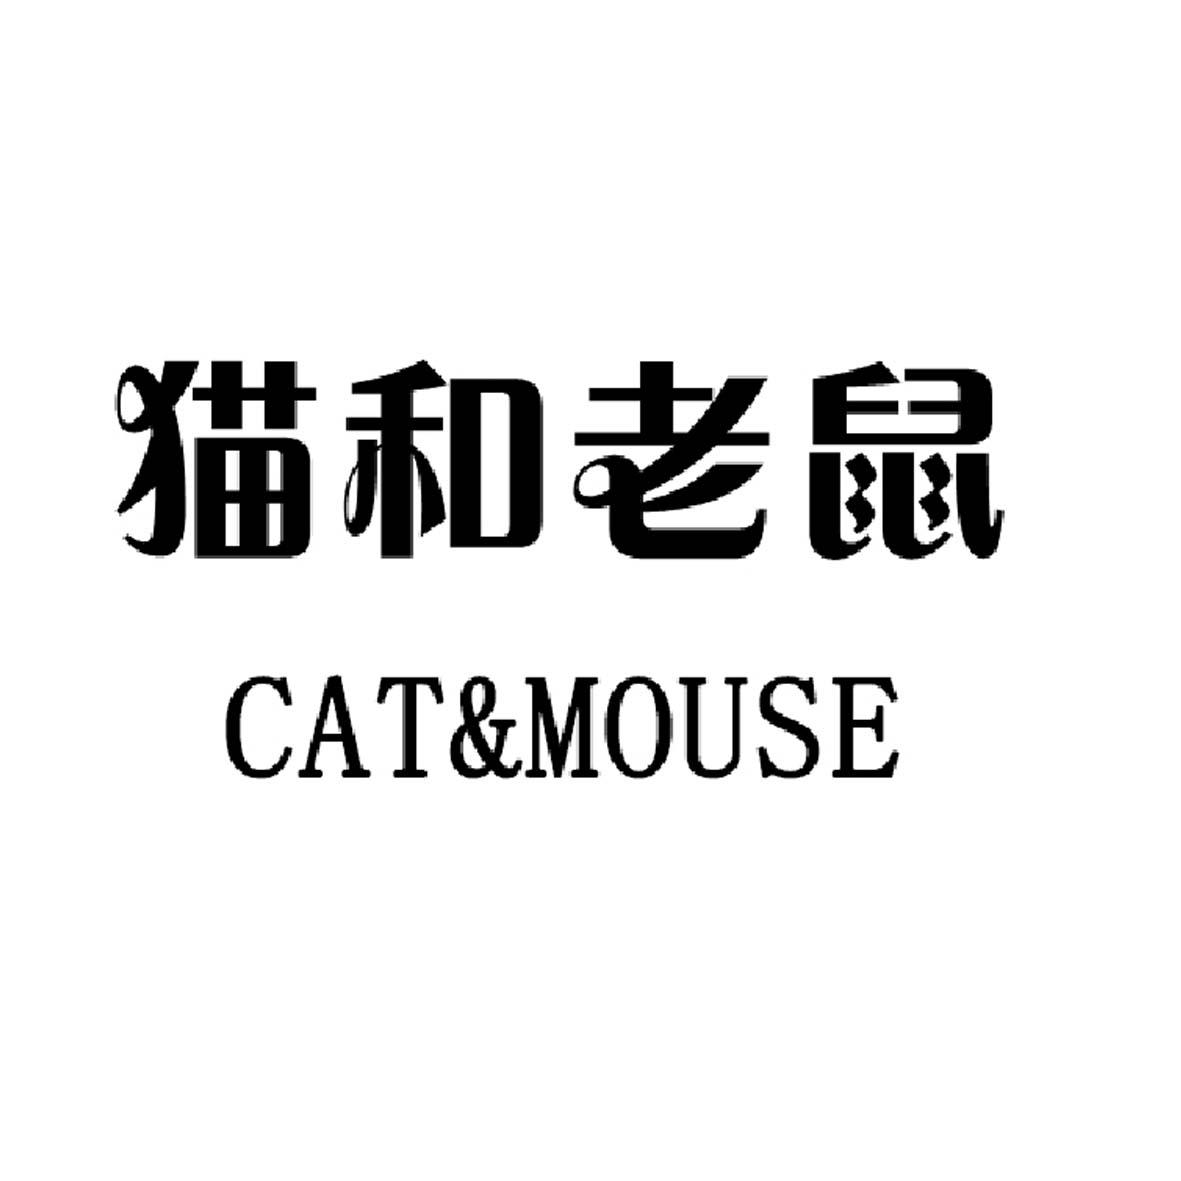 猫和老鼠 cat&mouse